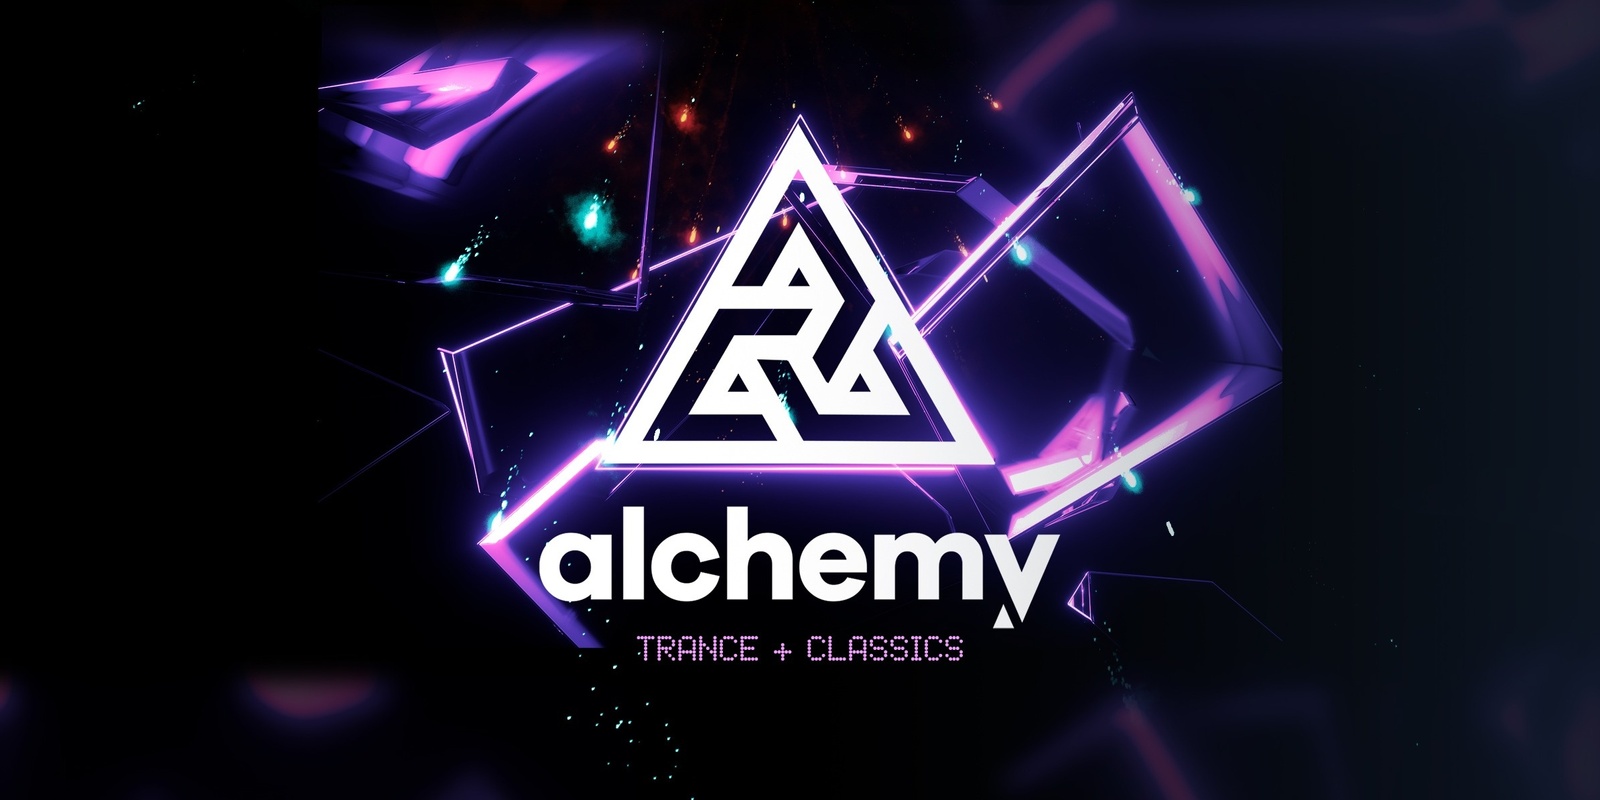 Alchemy's banner